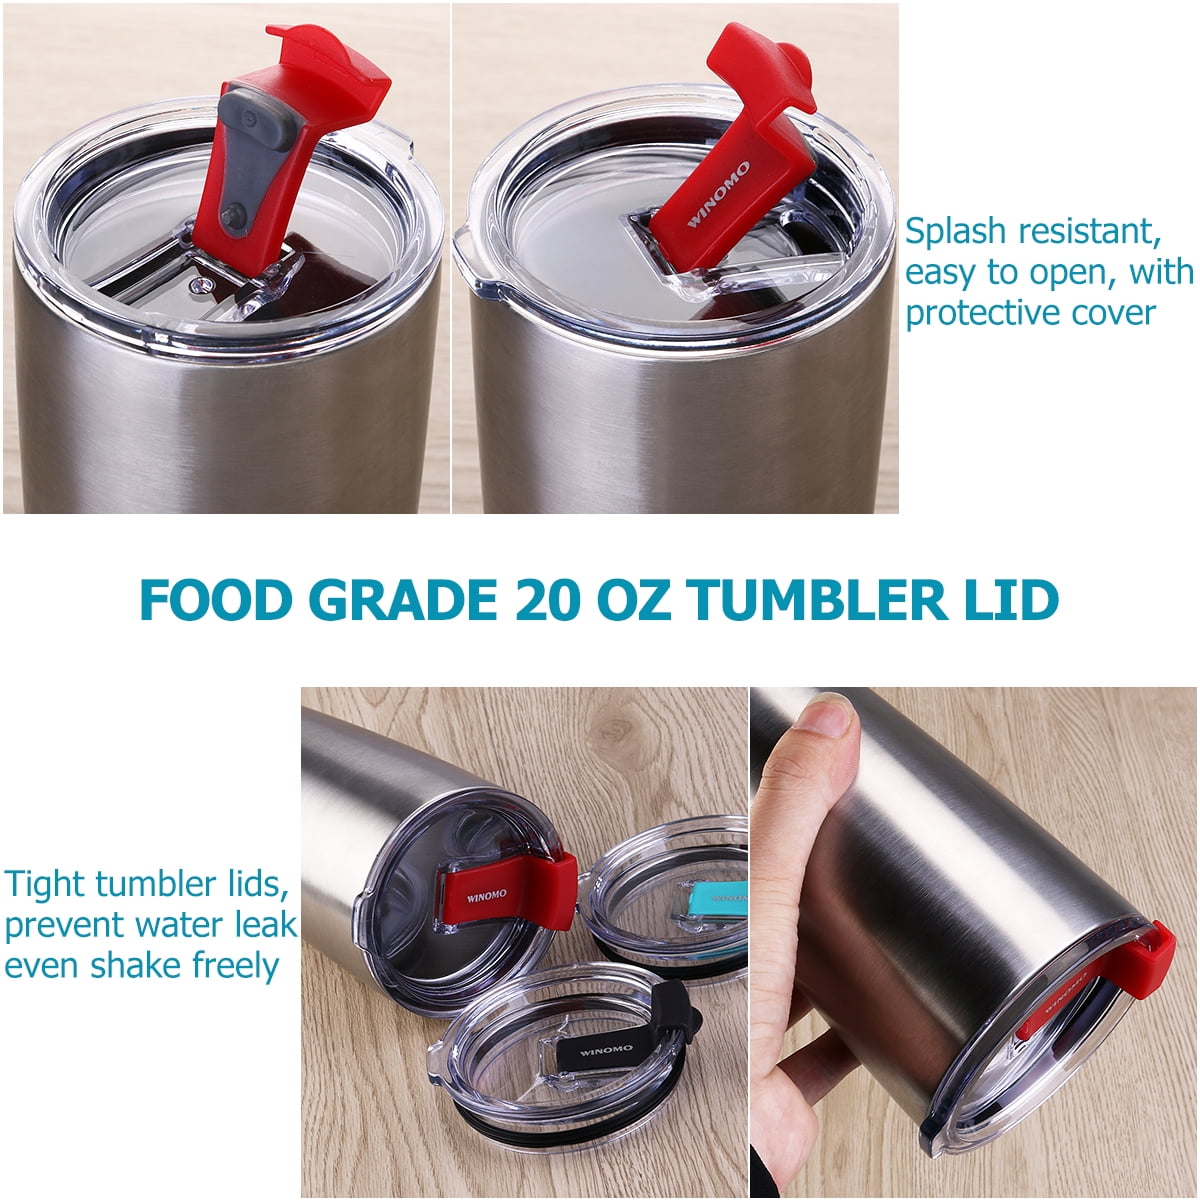 https://i5.walmartimages.com/seo/3pcs-20oz-Tumbler-Lids-Fits-for-Ozark-Trail-Rtic-Spill-proof-Resistant-Lids-Covers-for-Tumblers-Cups_c2687c9b-4719-4dd5-b2d3-eff95474e6ca_1.e2dba0d8c5c4093aea7d028ad37bd385.jpeg